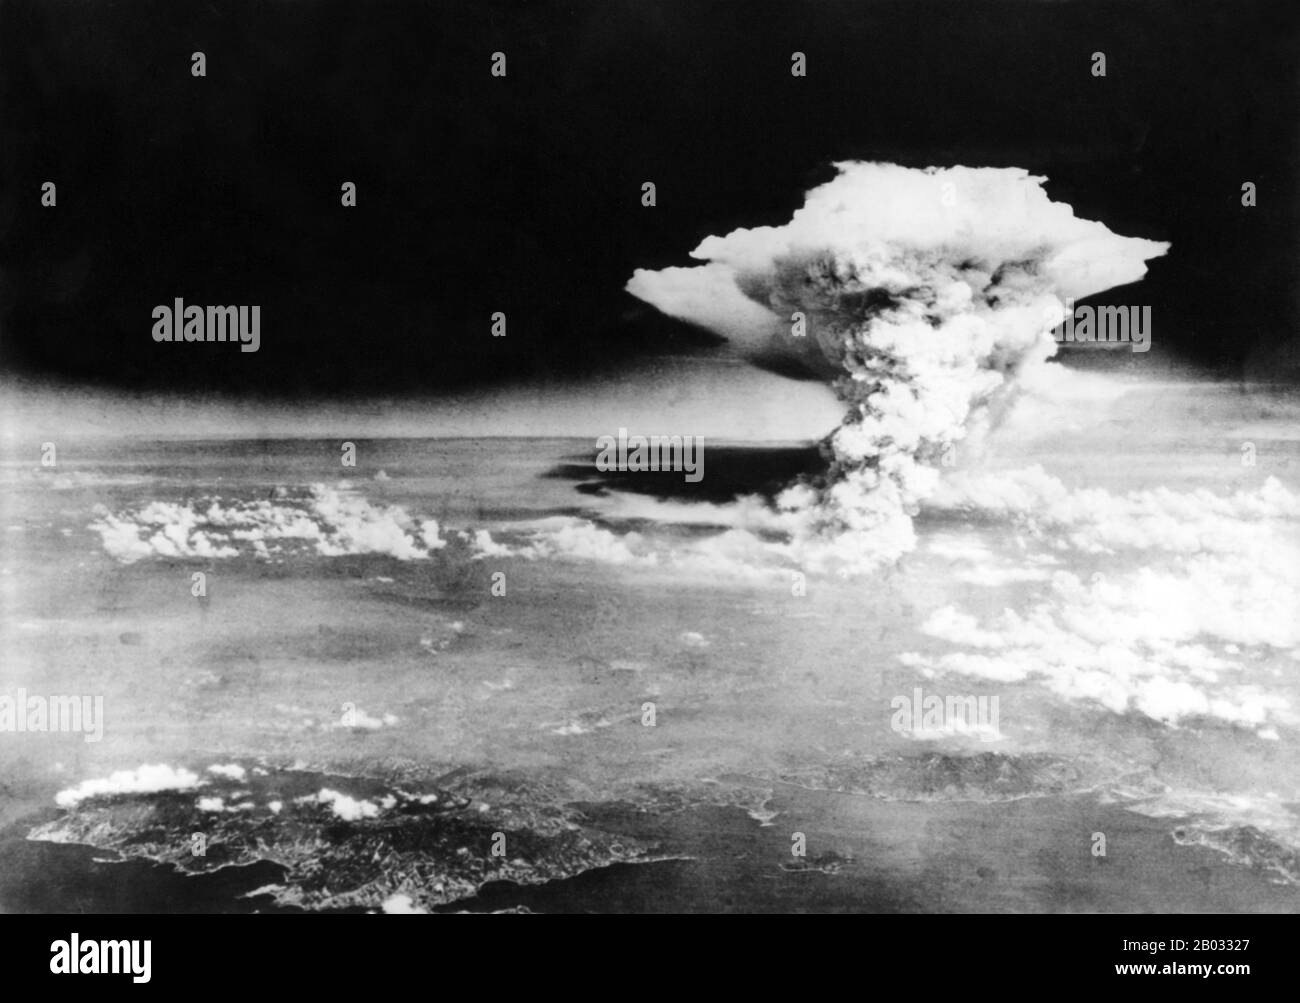 Gli Stati Uniti, con il consenso del Regno Unito, come stabilito nell'accordo di Québec, hanno abbandonato le armi nucleari sulle città giapponesi di Hiroshima e Nagasaki nell'agosto 1945, durante la fase finale della seconda guerra mondiale I due bombardamenti, che hanno ucciso almeno 129.000 persone, restano l'unico uso di armi nucleari per la guerra nella storia. Foto Stock